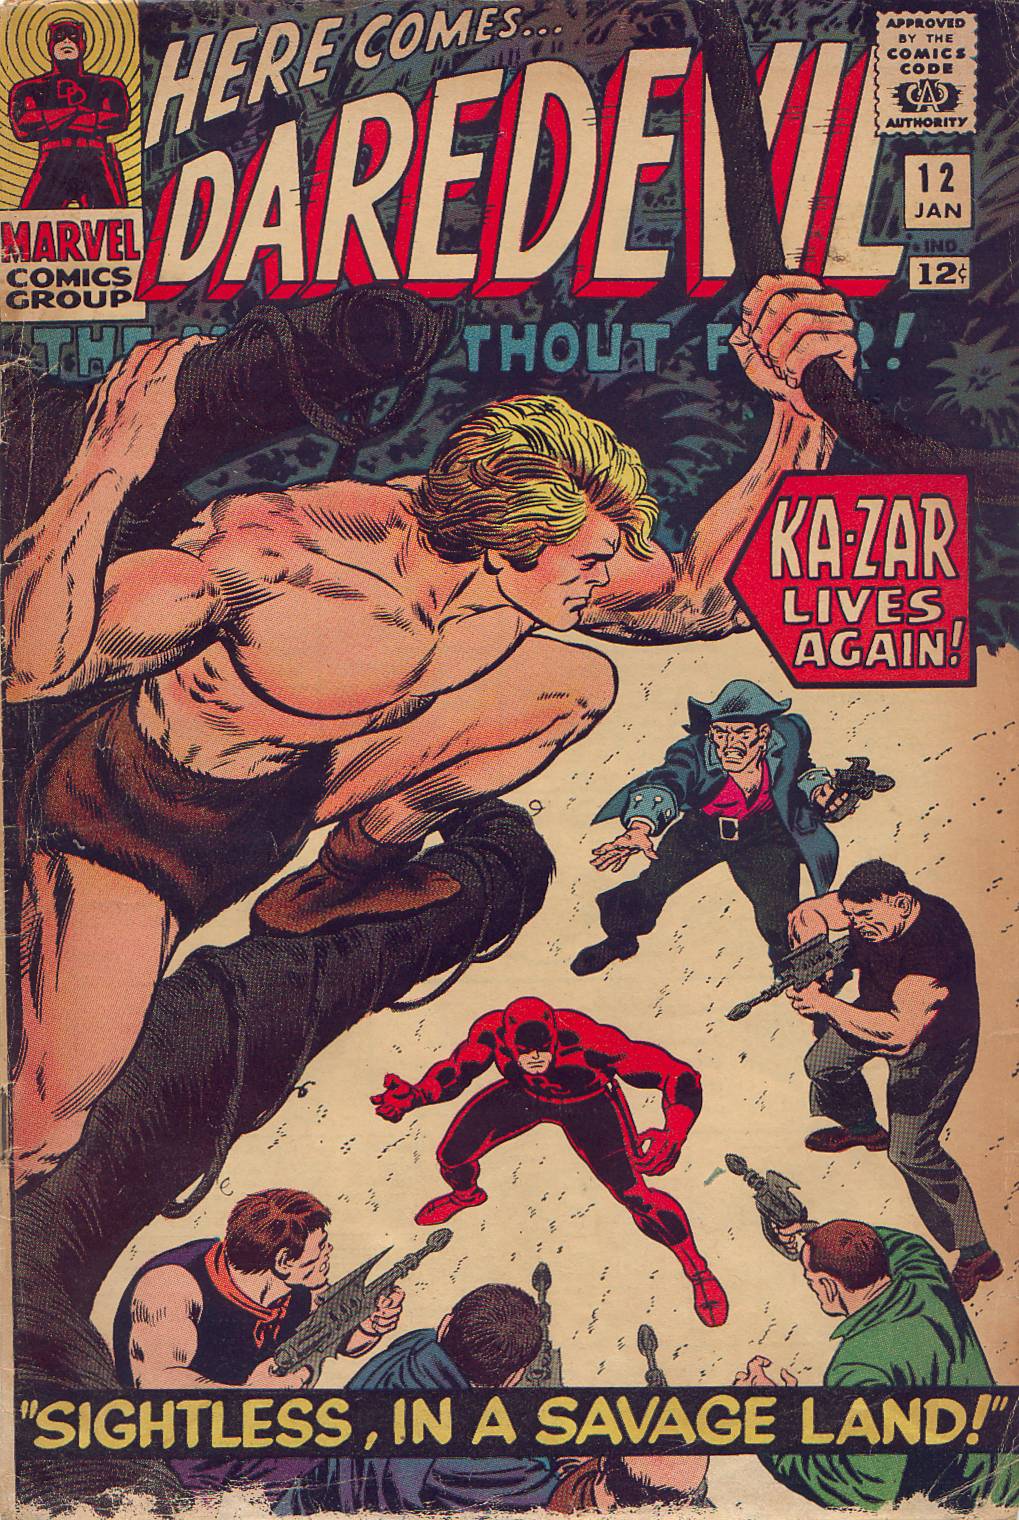 Daredevil Vol. 1 #12